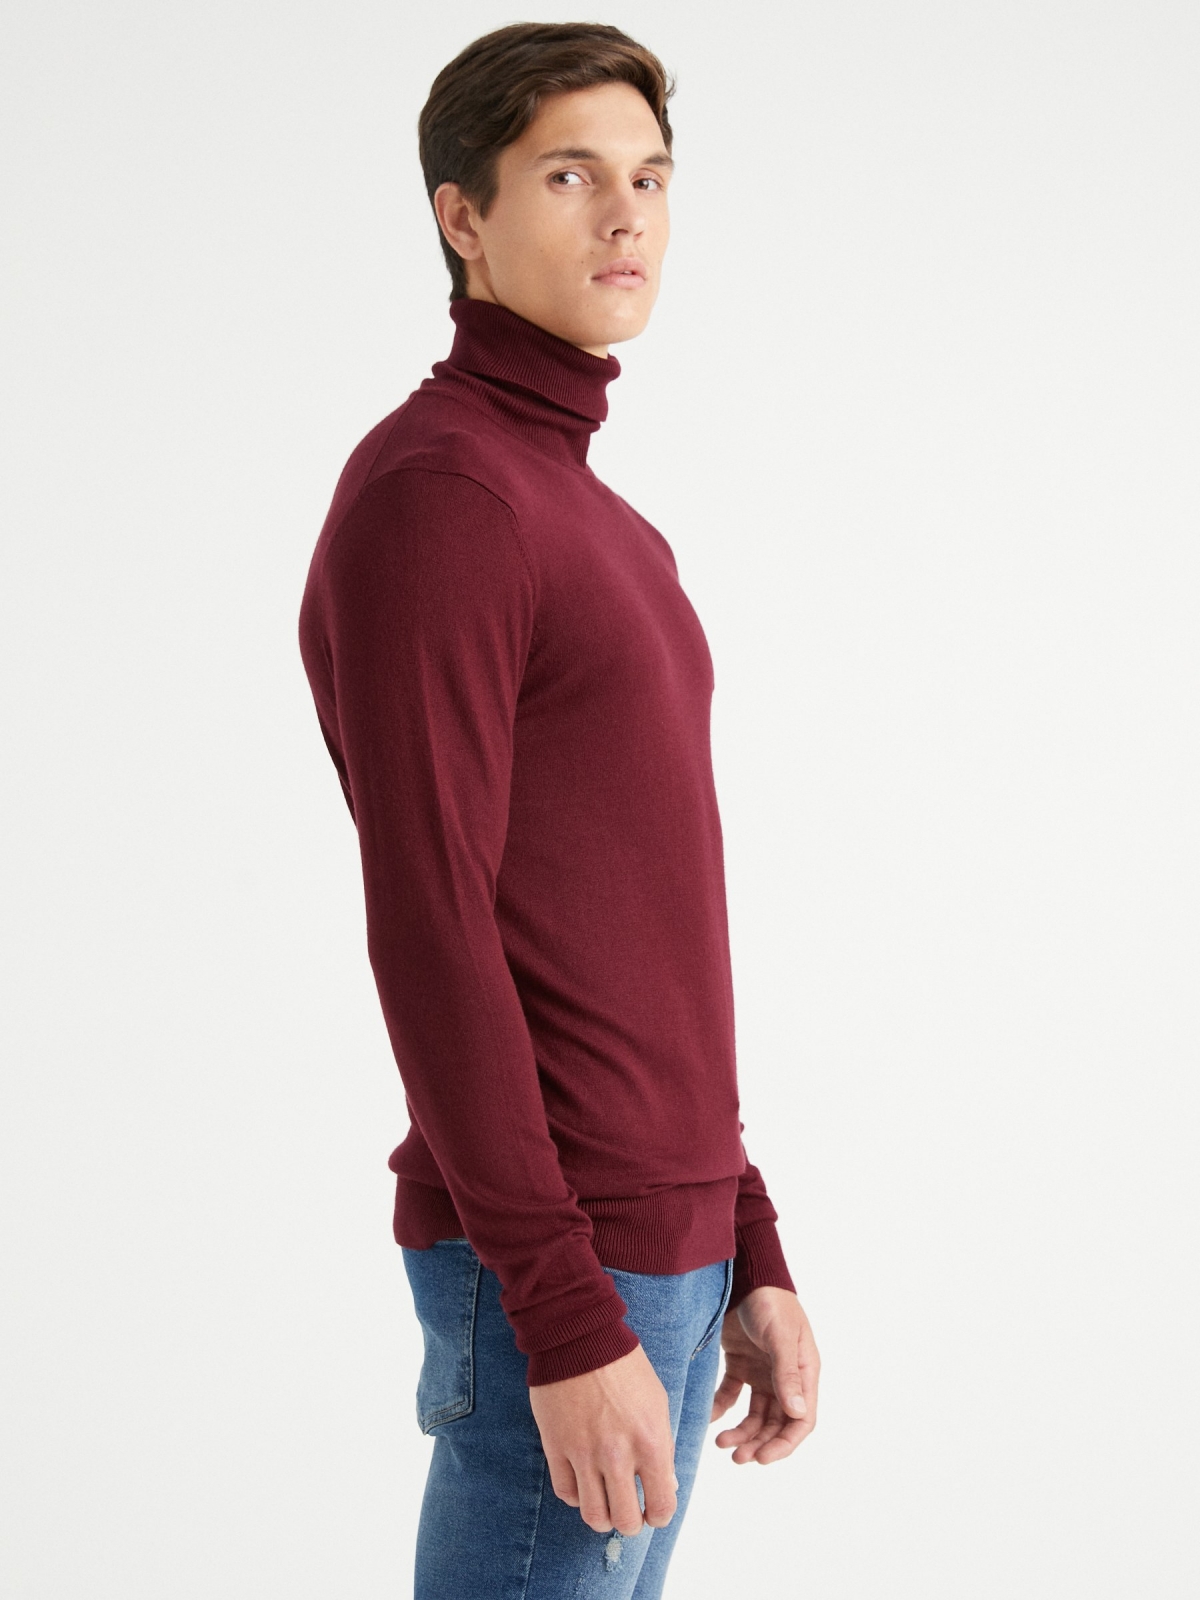 Suéter básico de gola alta vermelho primeiro plano